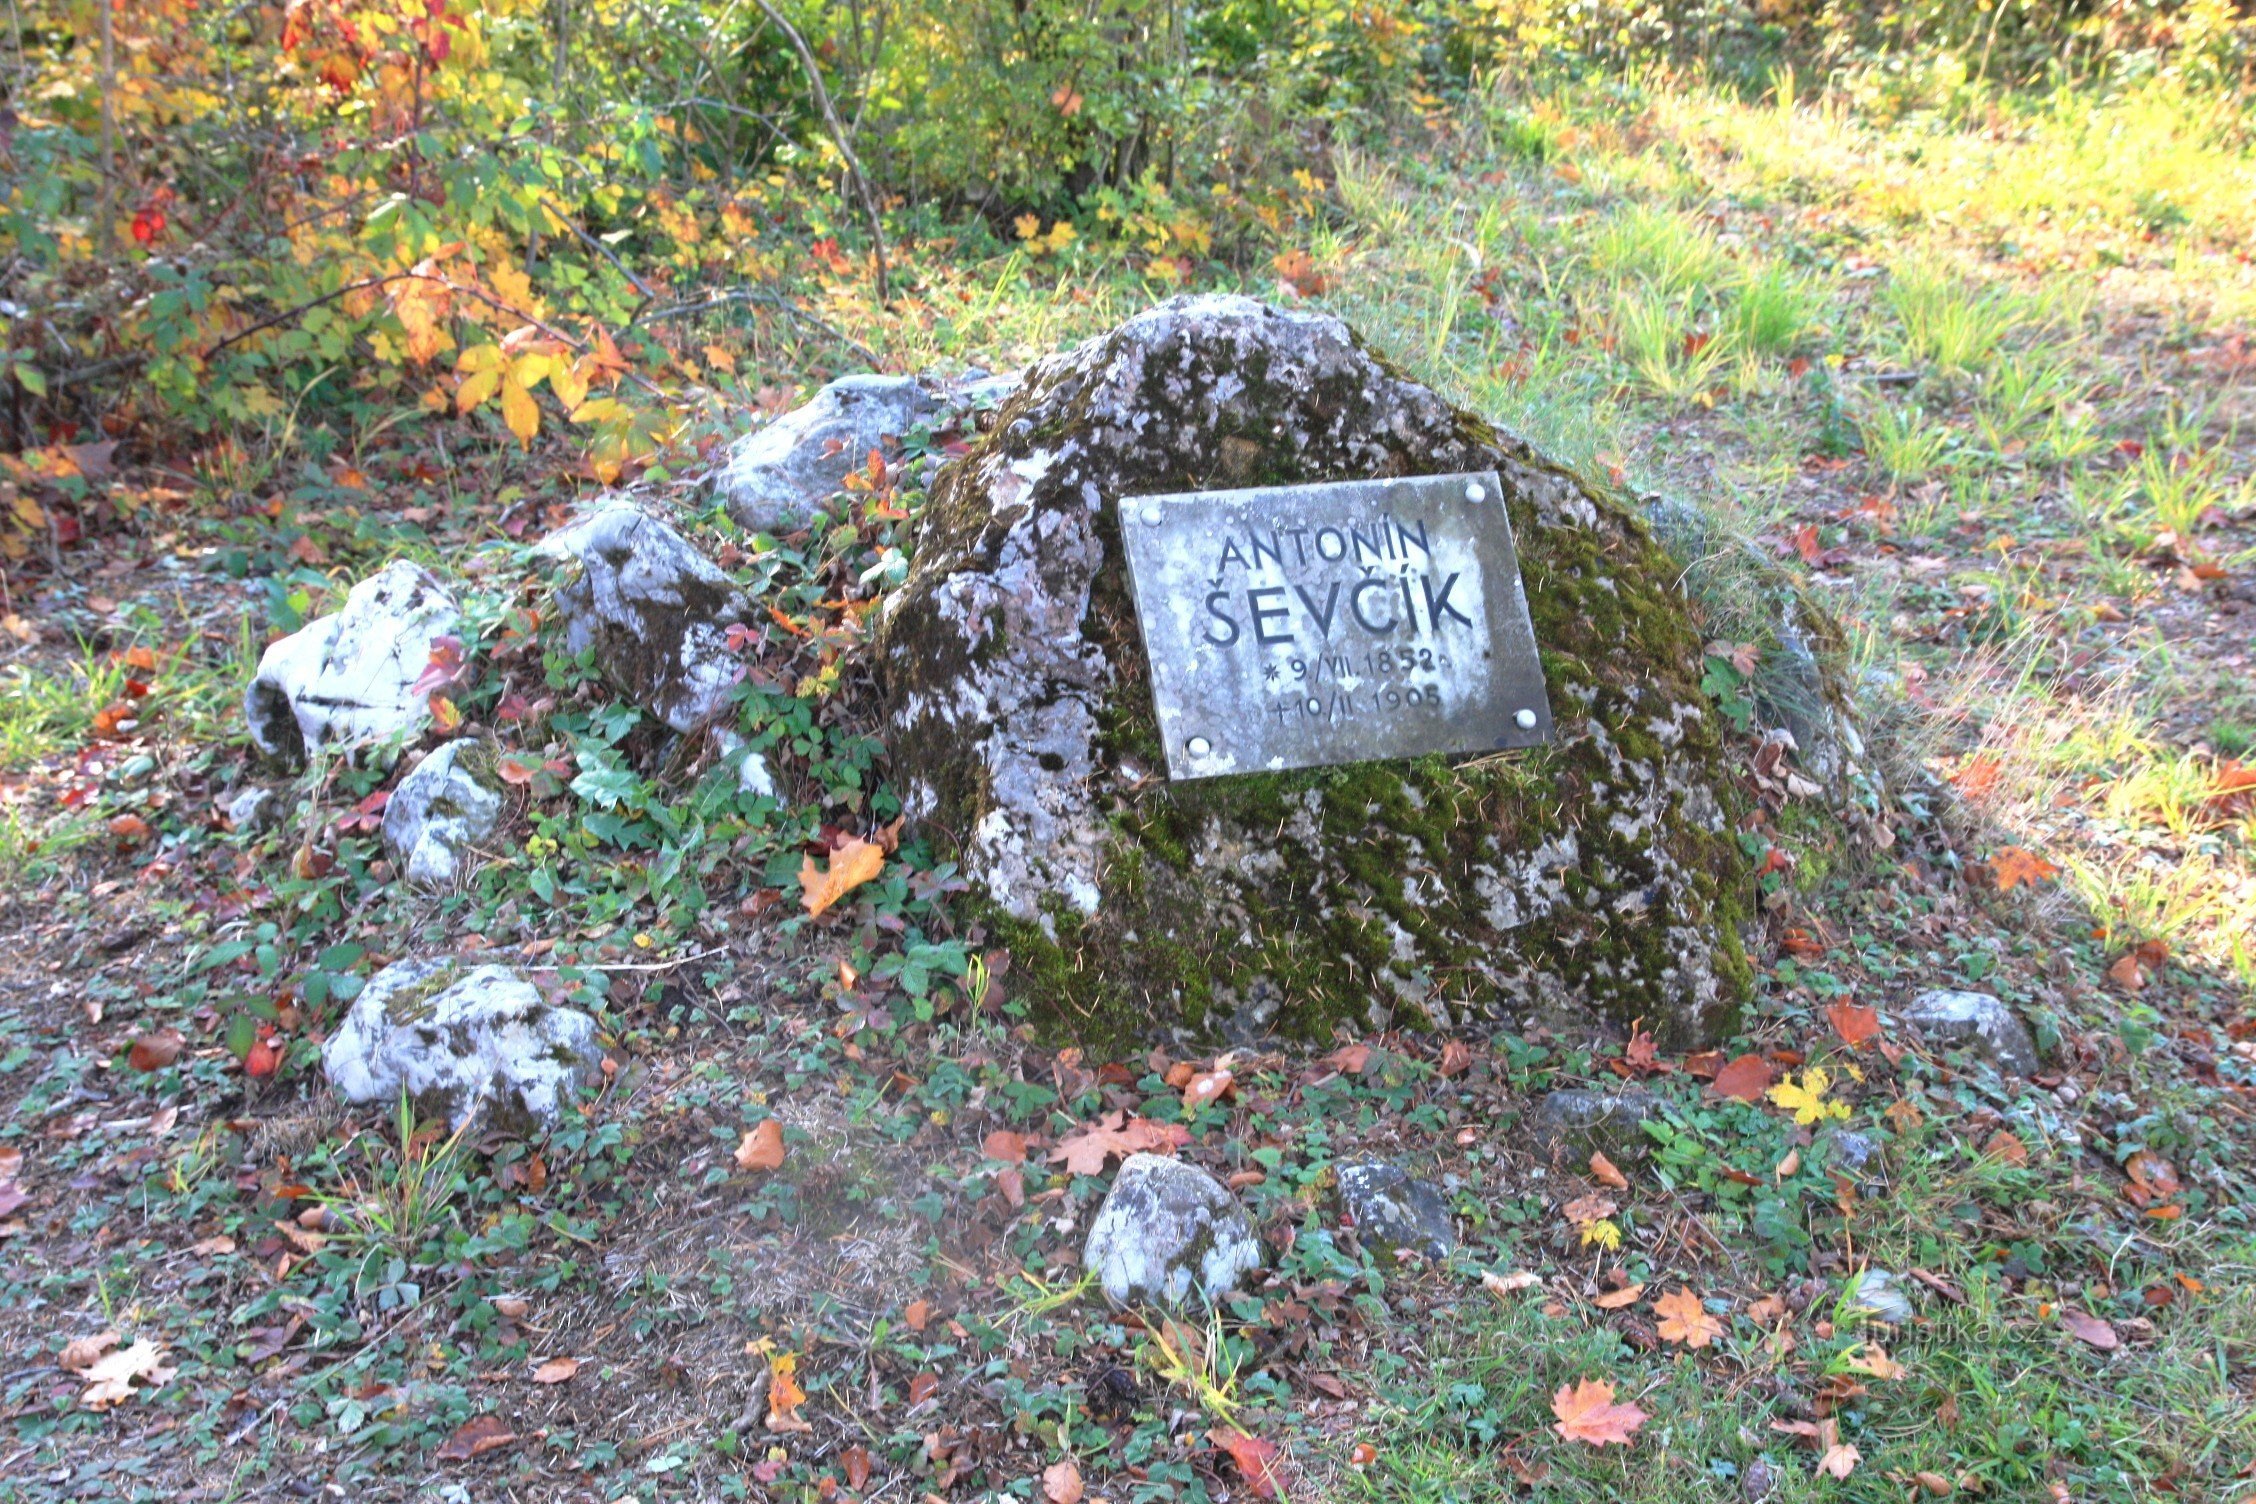 Schattova pot se začne pri spomeniku A. Ševčíku